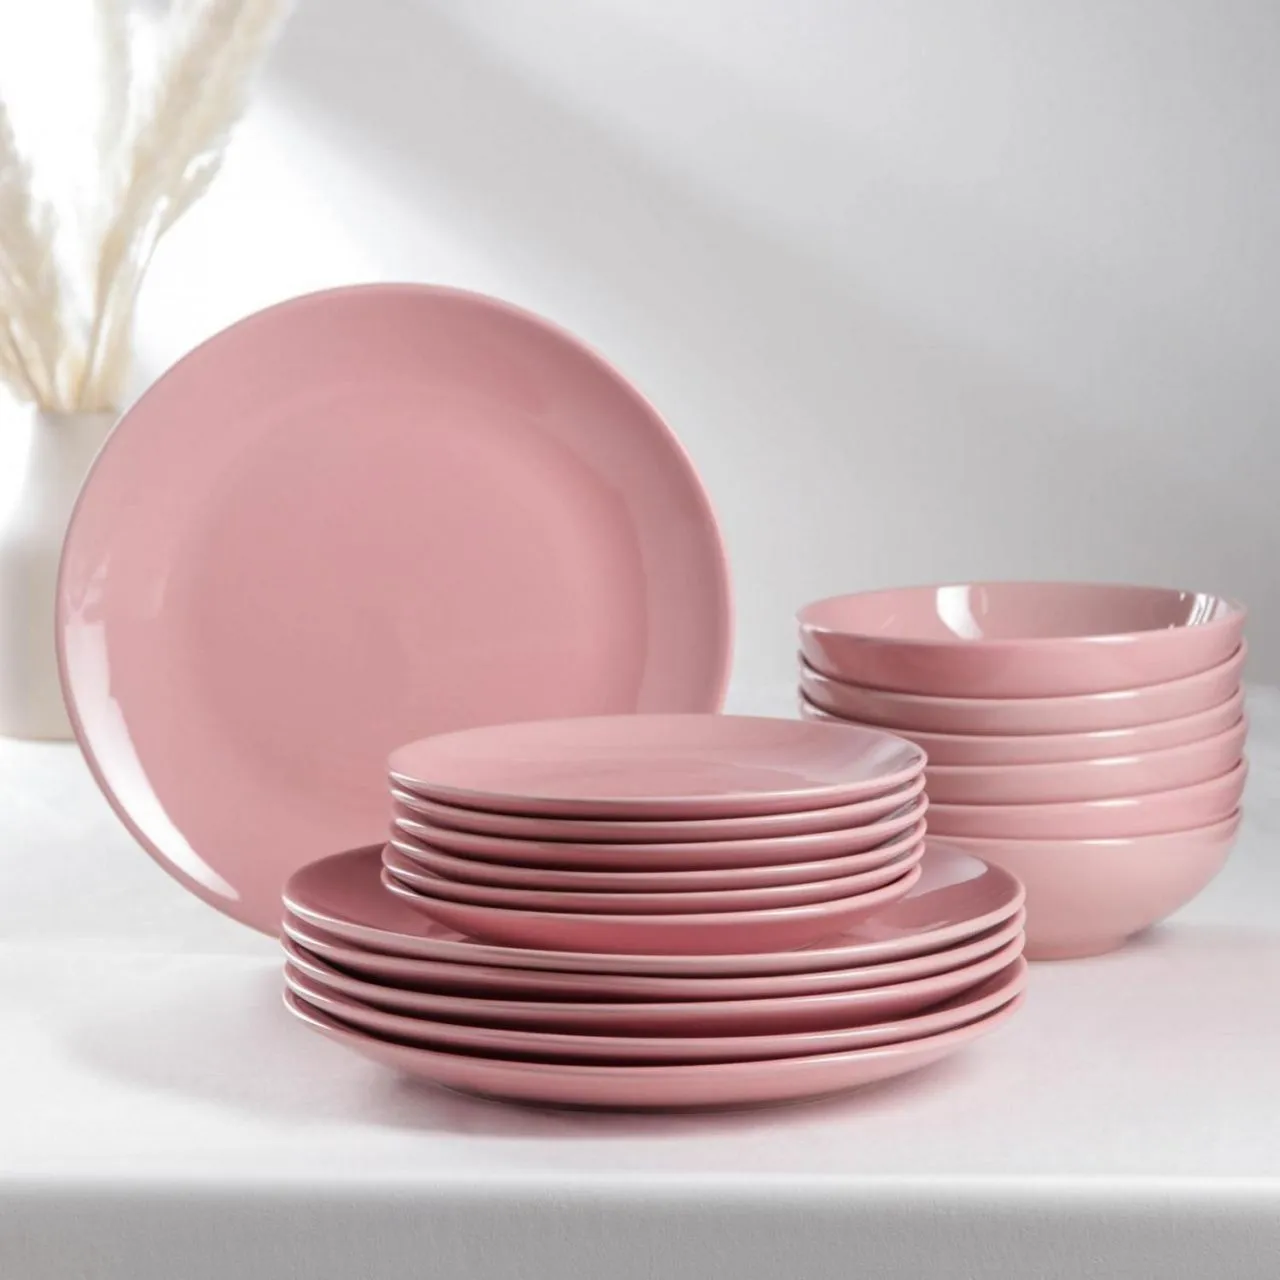 Набор тарелок 18 шт "Пастель" 6 тар 19 см, 6 тар 27 см, 6 мисок 19 см, цвет розовый   5046412   